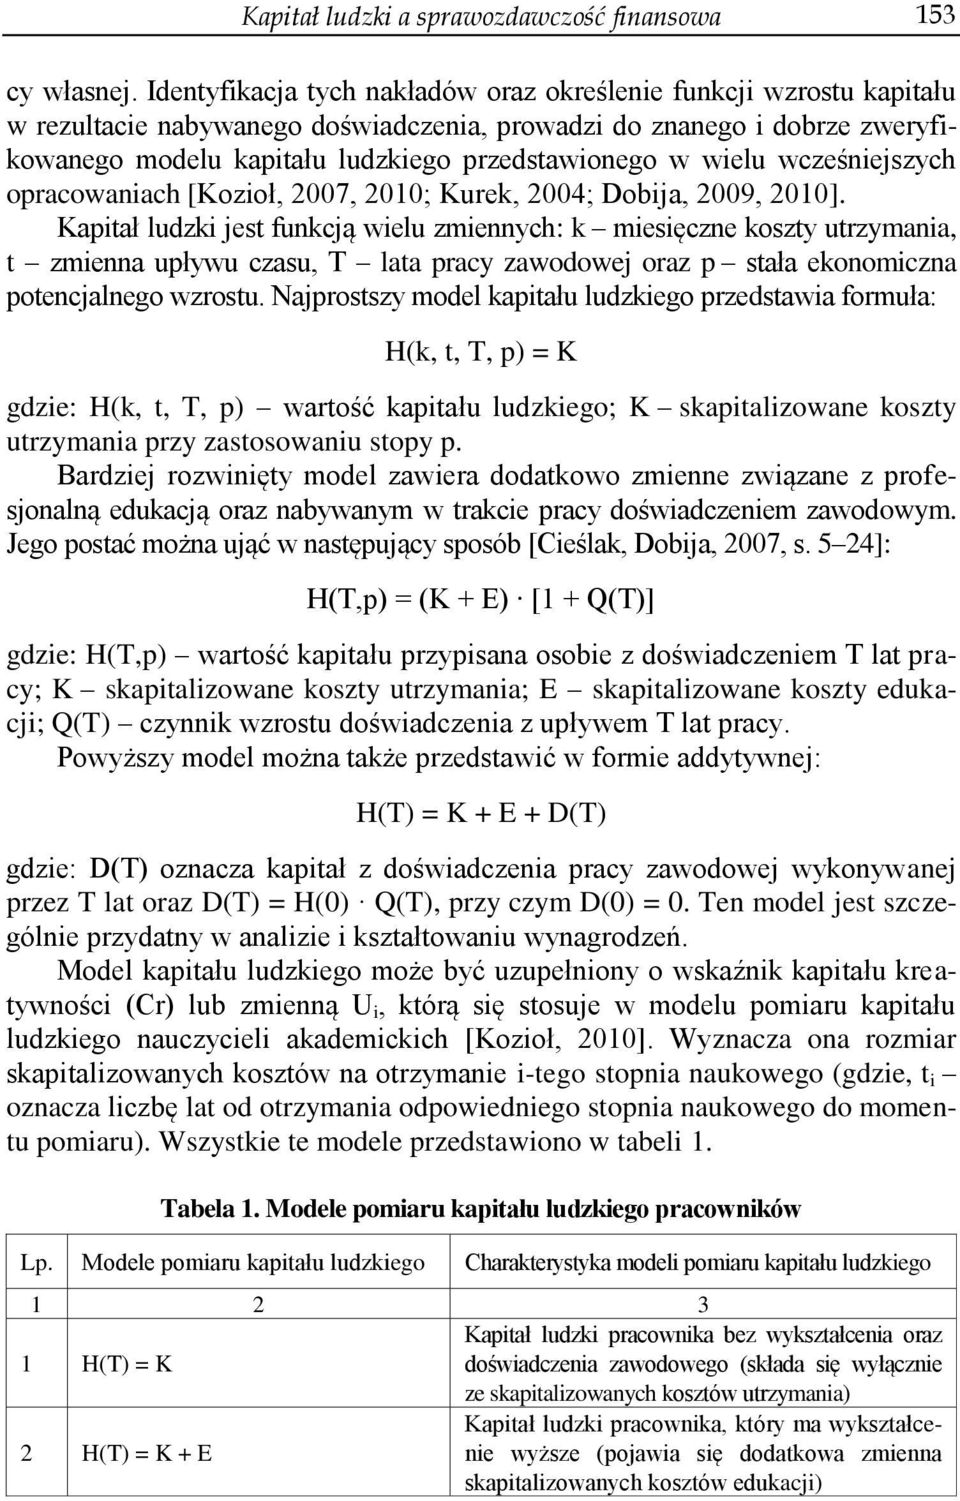 wielu wcześniejszych opracowaniach [Kozioł, 2007, 2010; Kurek, 2004; Dobija, 2009, 2010].